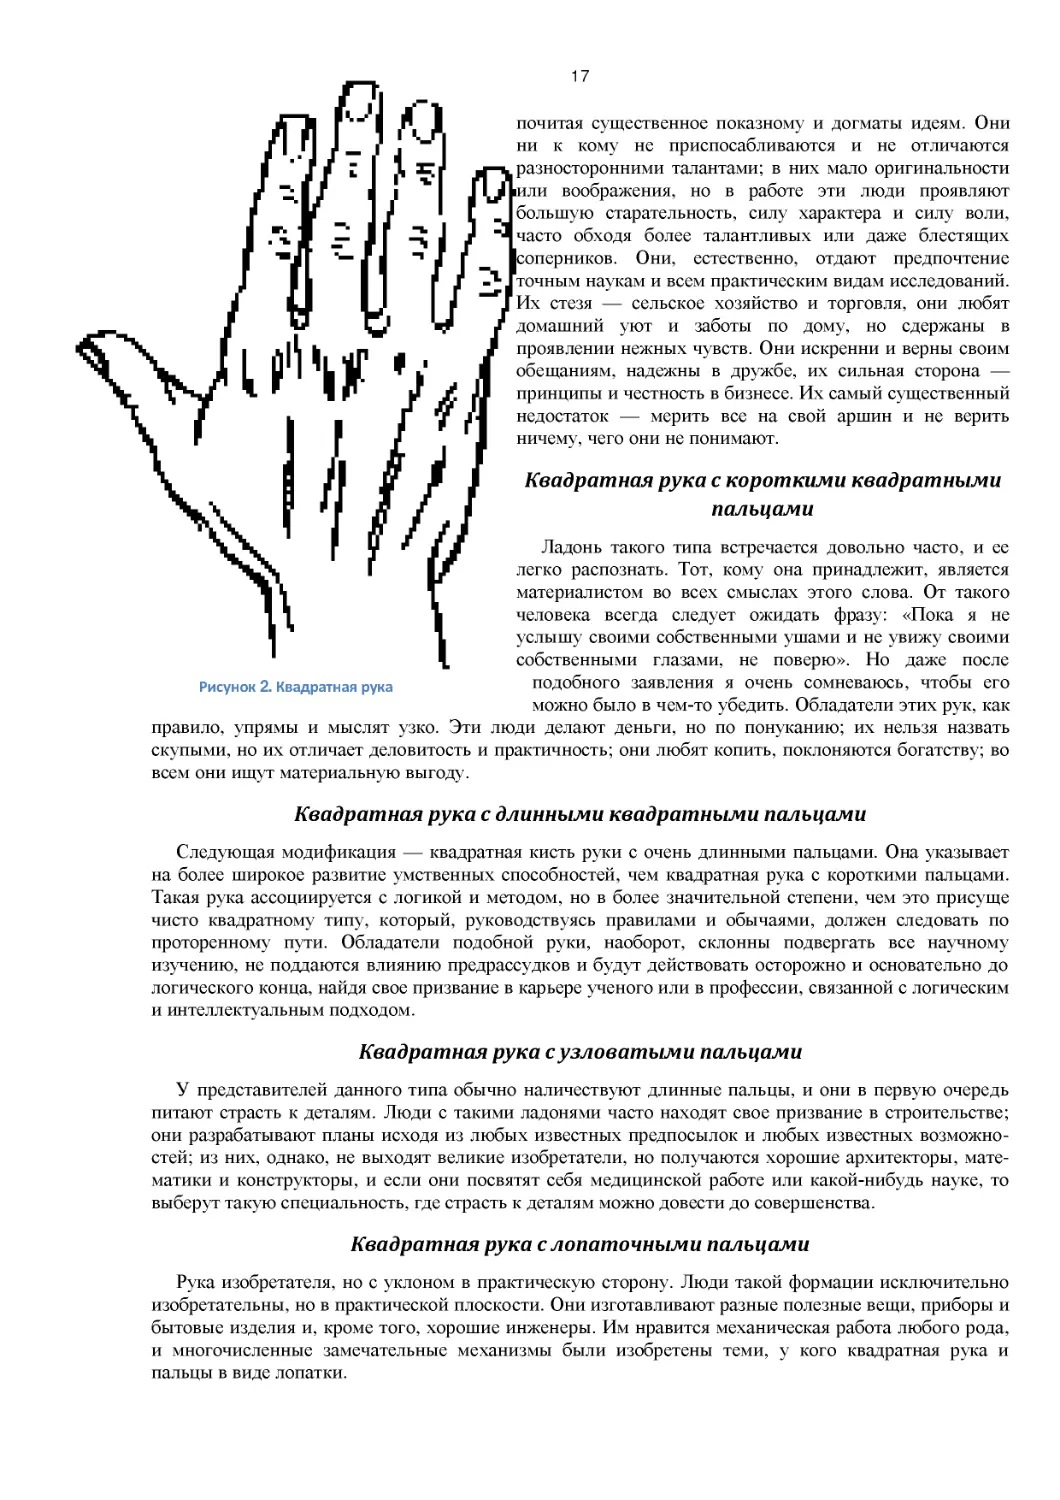 ﻿Квадратная рука с длинными квадратными пальцам
﻿Квадратная рука с узловатыми пальцам
﻿Квадратная рука с лопаточными пальцам